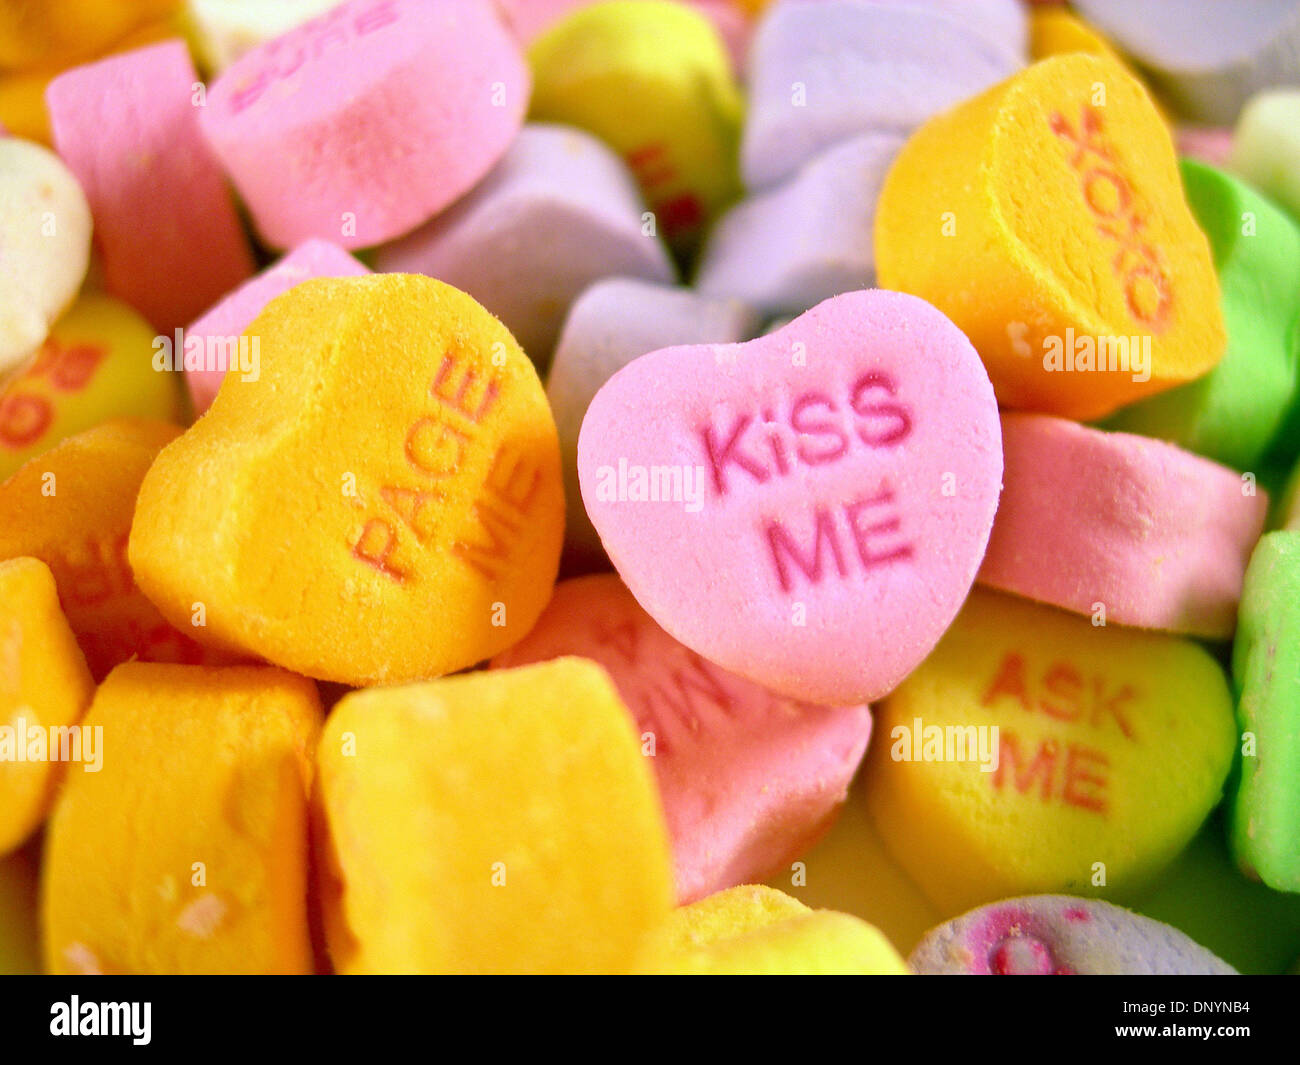 Feb 05, 2006 ; Los Angeles, CA, USA ; tas de cany coeurs - coeurs de bonbons  pour la Saint-Valentin présentent des paroles romantiques comme, 'Kiss Me',  'Page moi,' et 'être la